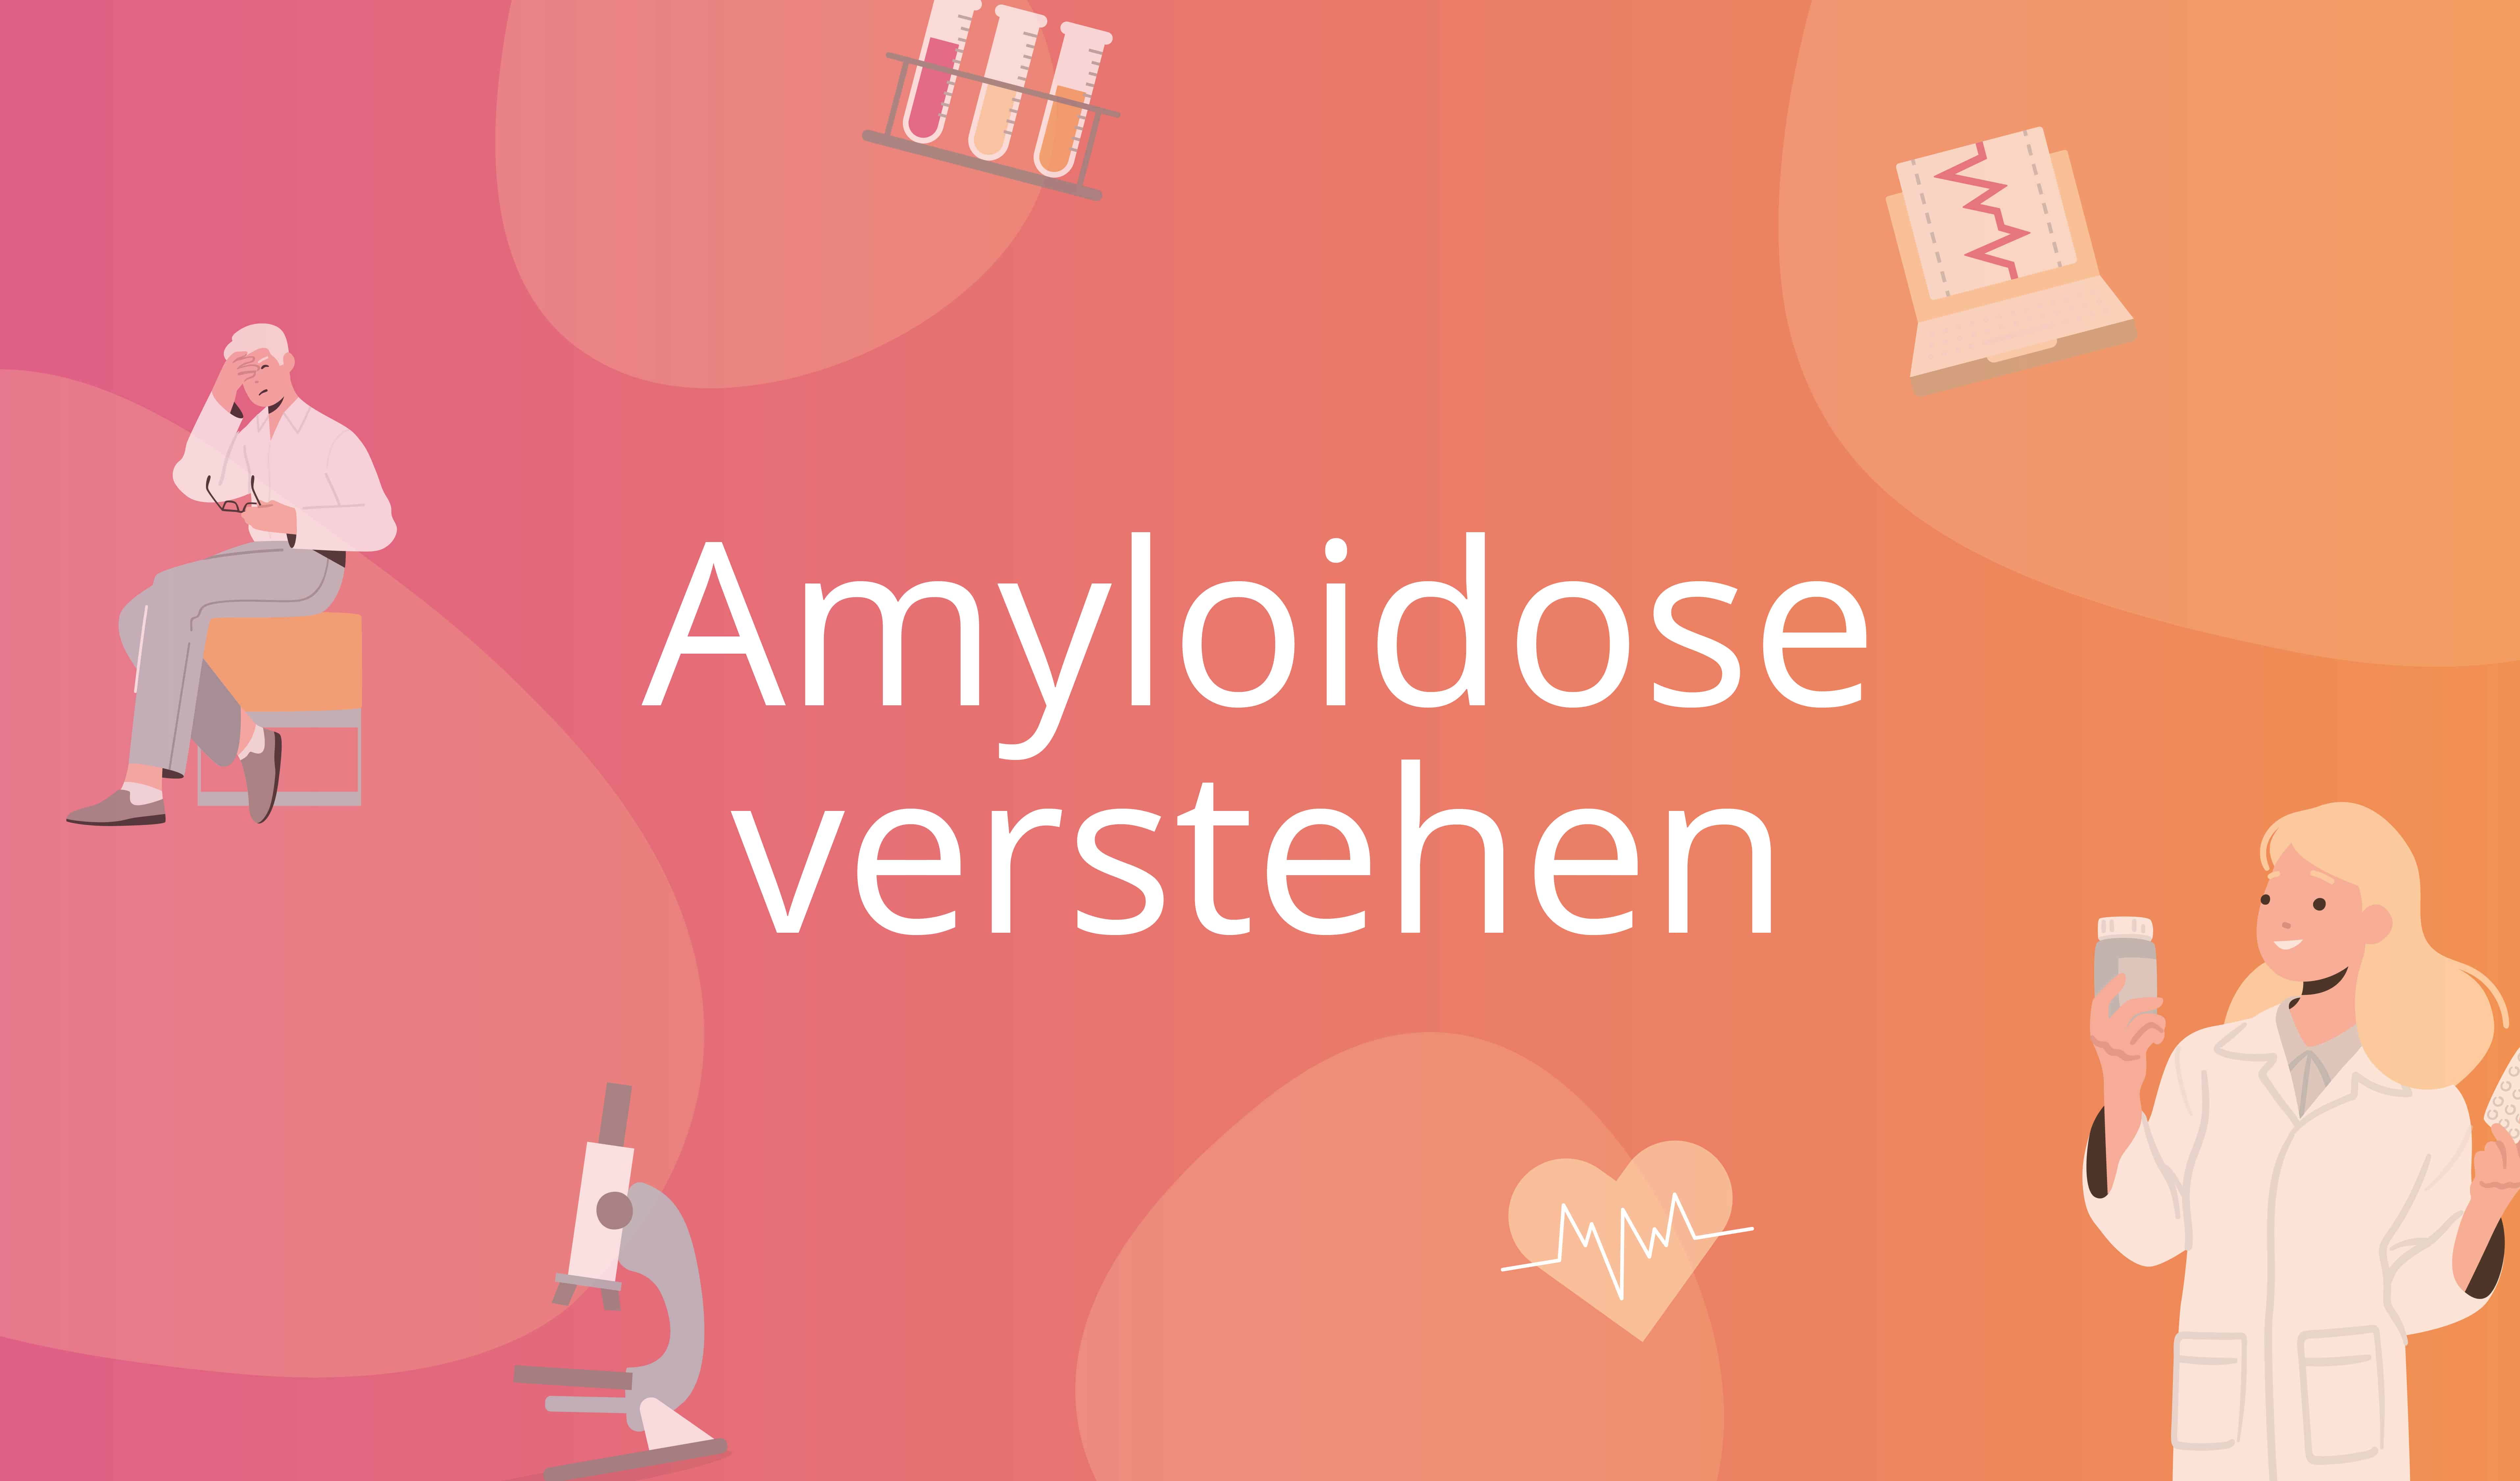 Amyloidose verstehen Kursbild mit Text